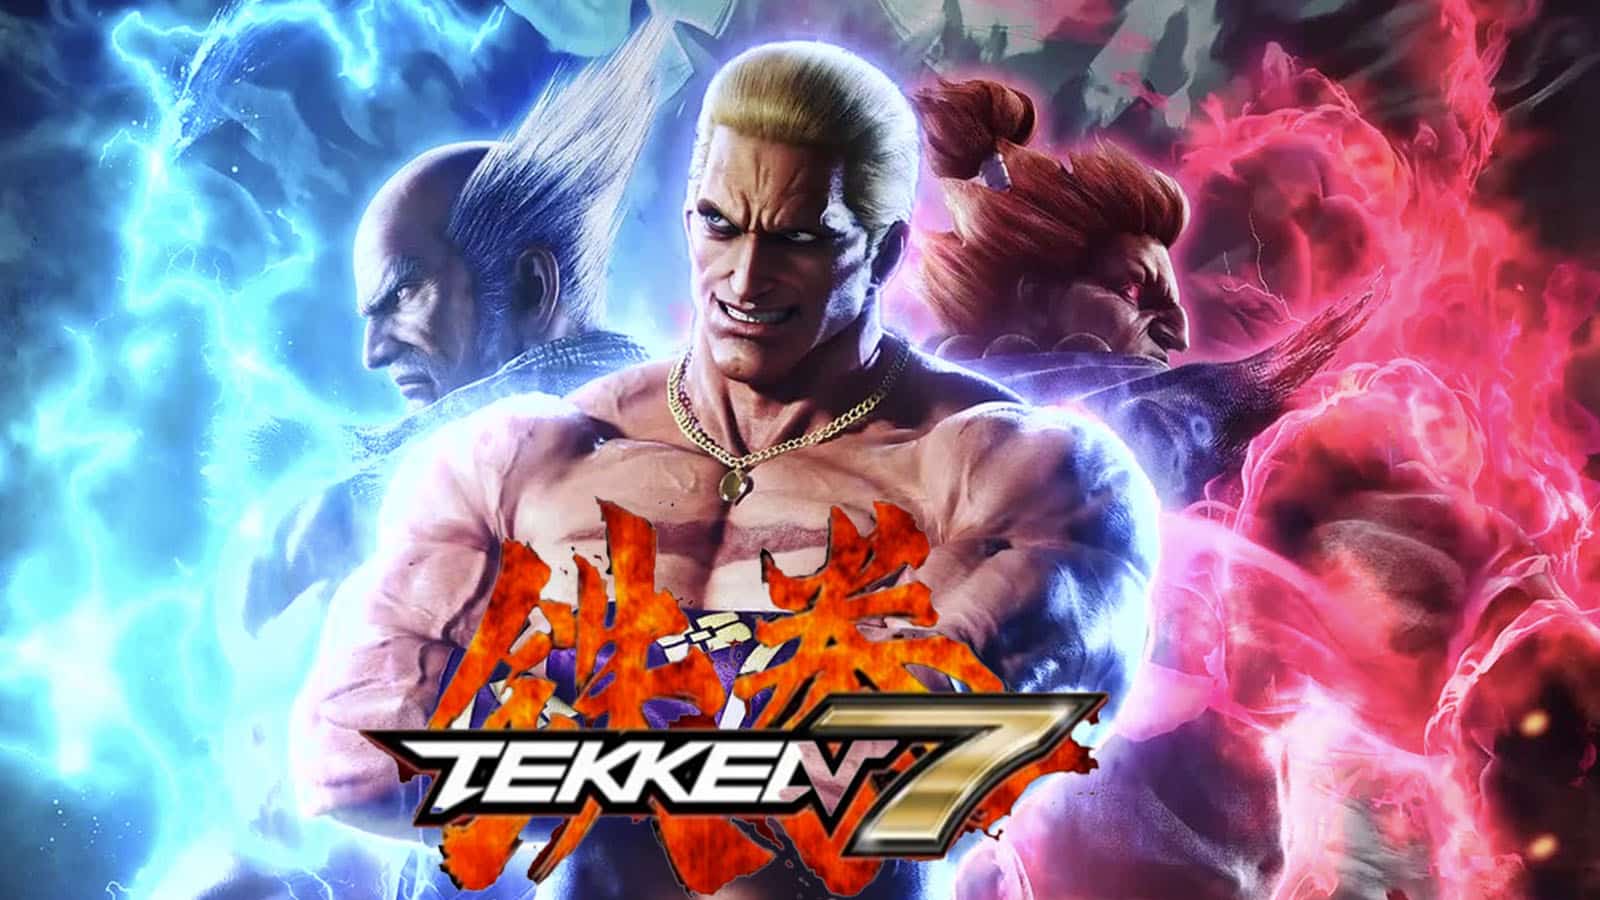 Who is Reina Mishima in Tekken 8? Character details, stage, trailer, more -  Dexerto